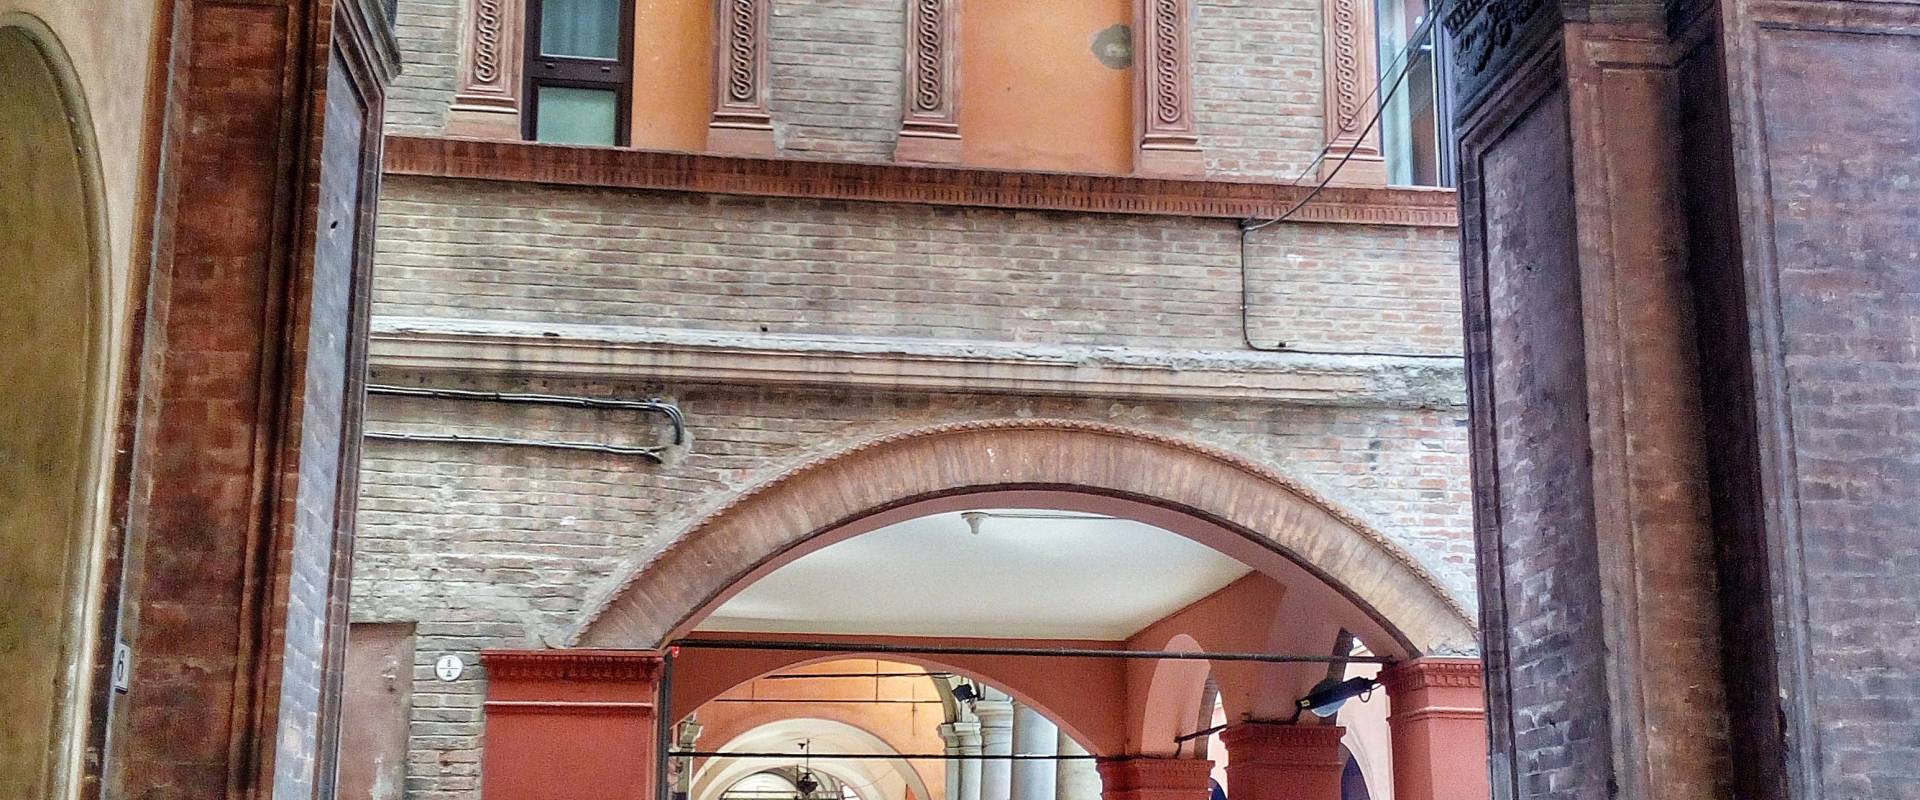 Portico di strada maggiore.. Bologna photo by Maretta Angelini